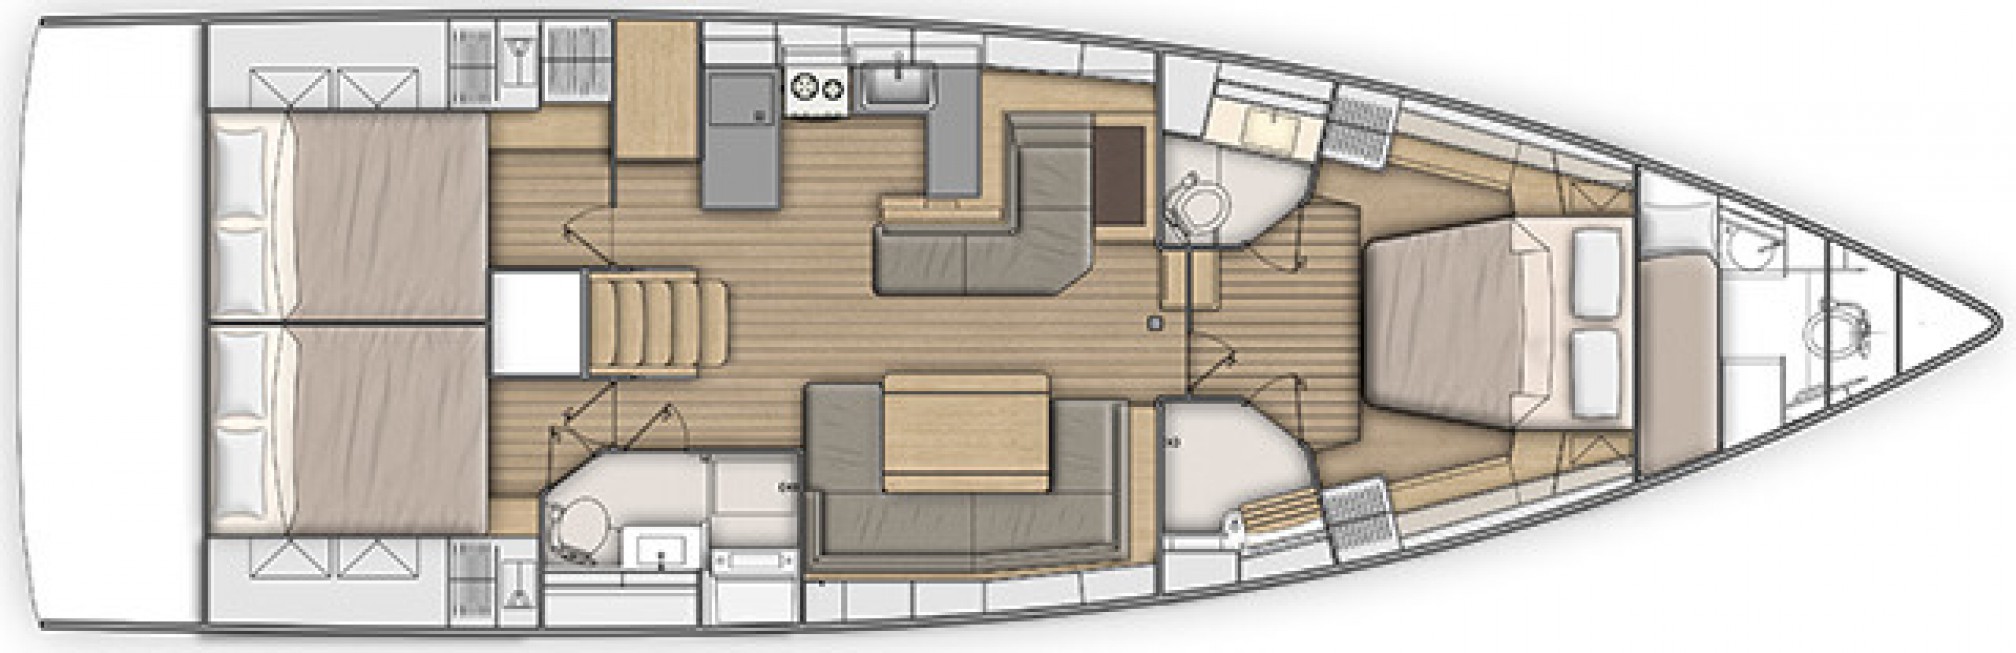 Bateau de location Oceanis 51.1 layout